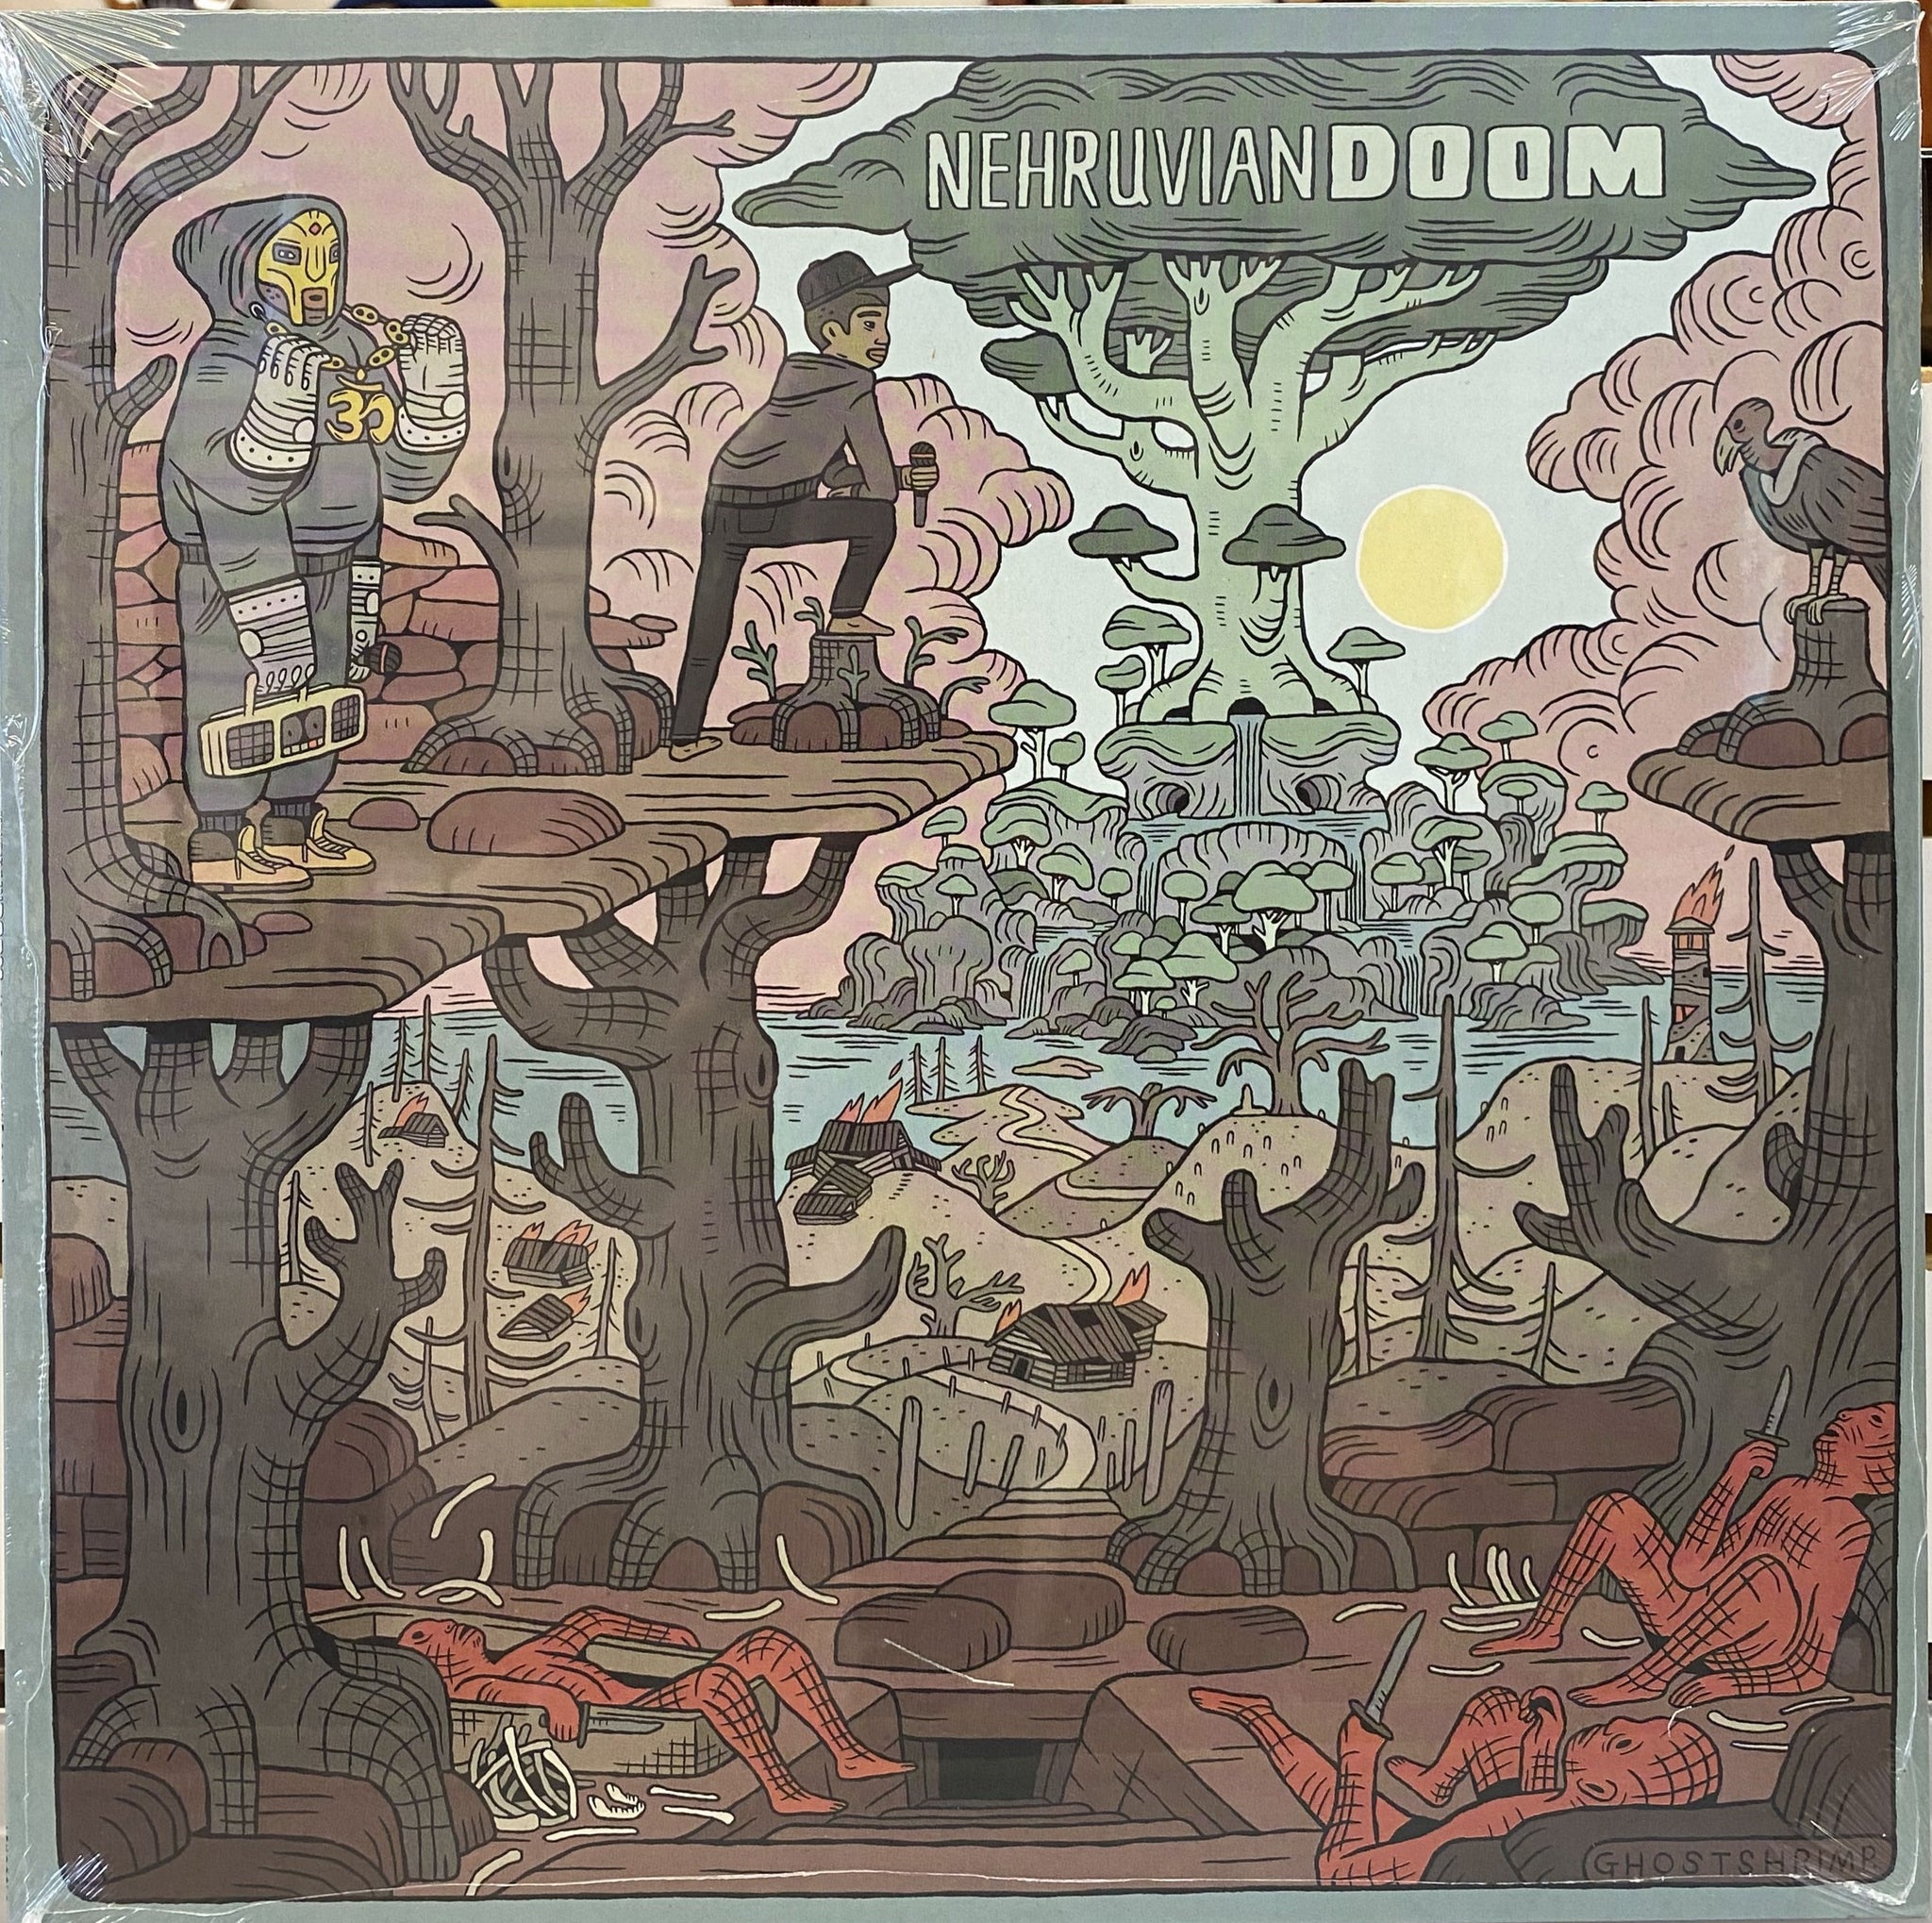 MF Doom & Bishop Nehru - Nehruvian Doom - Sound of the Son - Vinyl Record LP